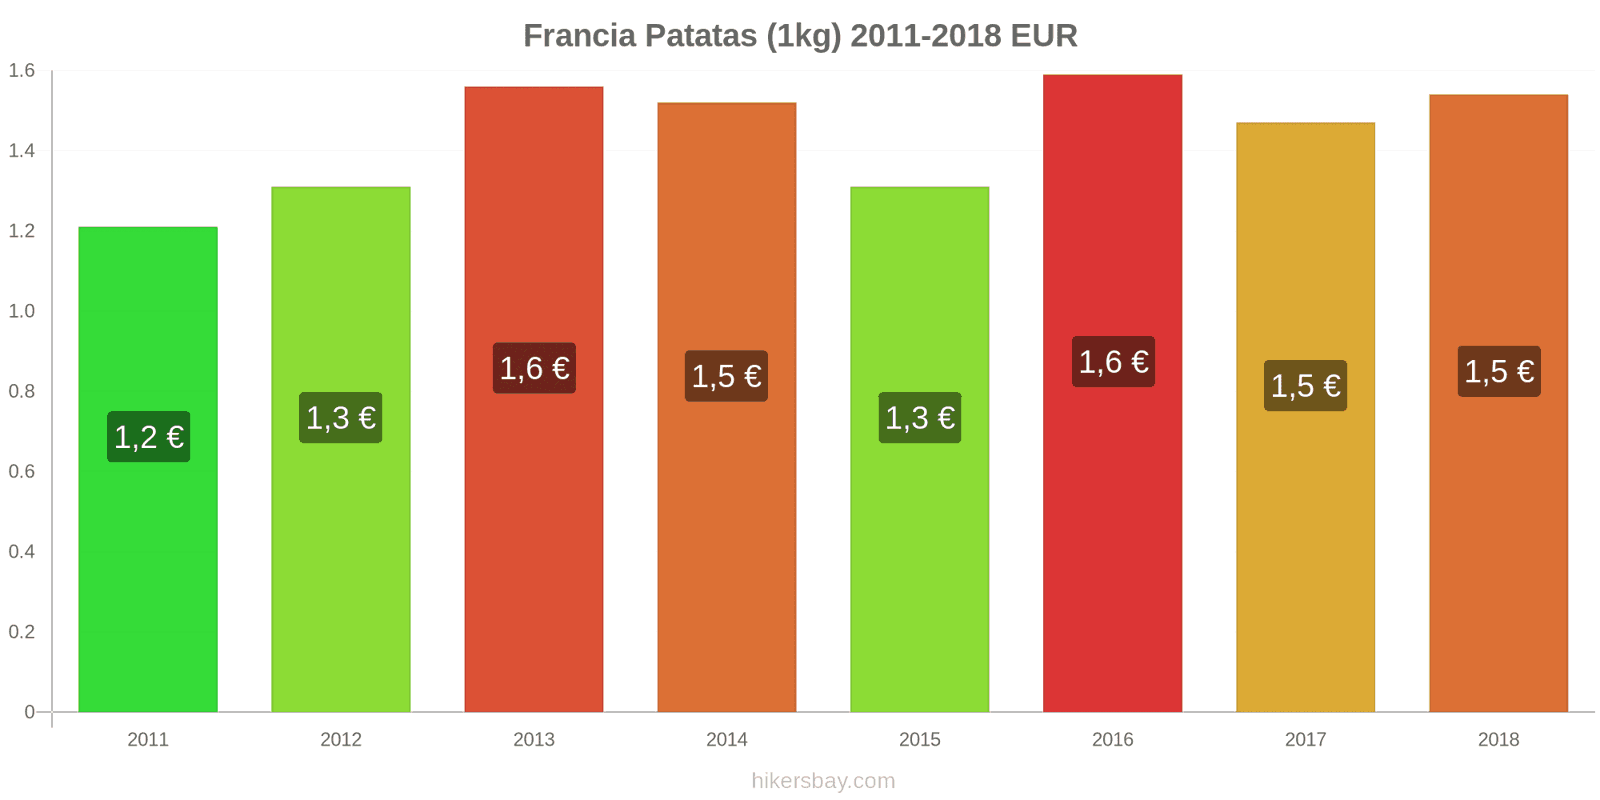 Francia cambios de precios Patatas (1kg) hikersbay.com